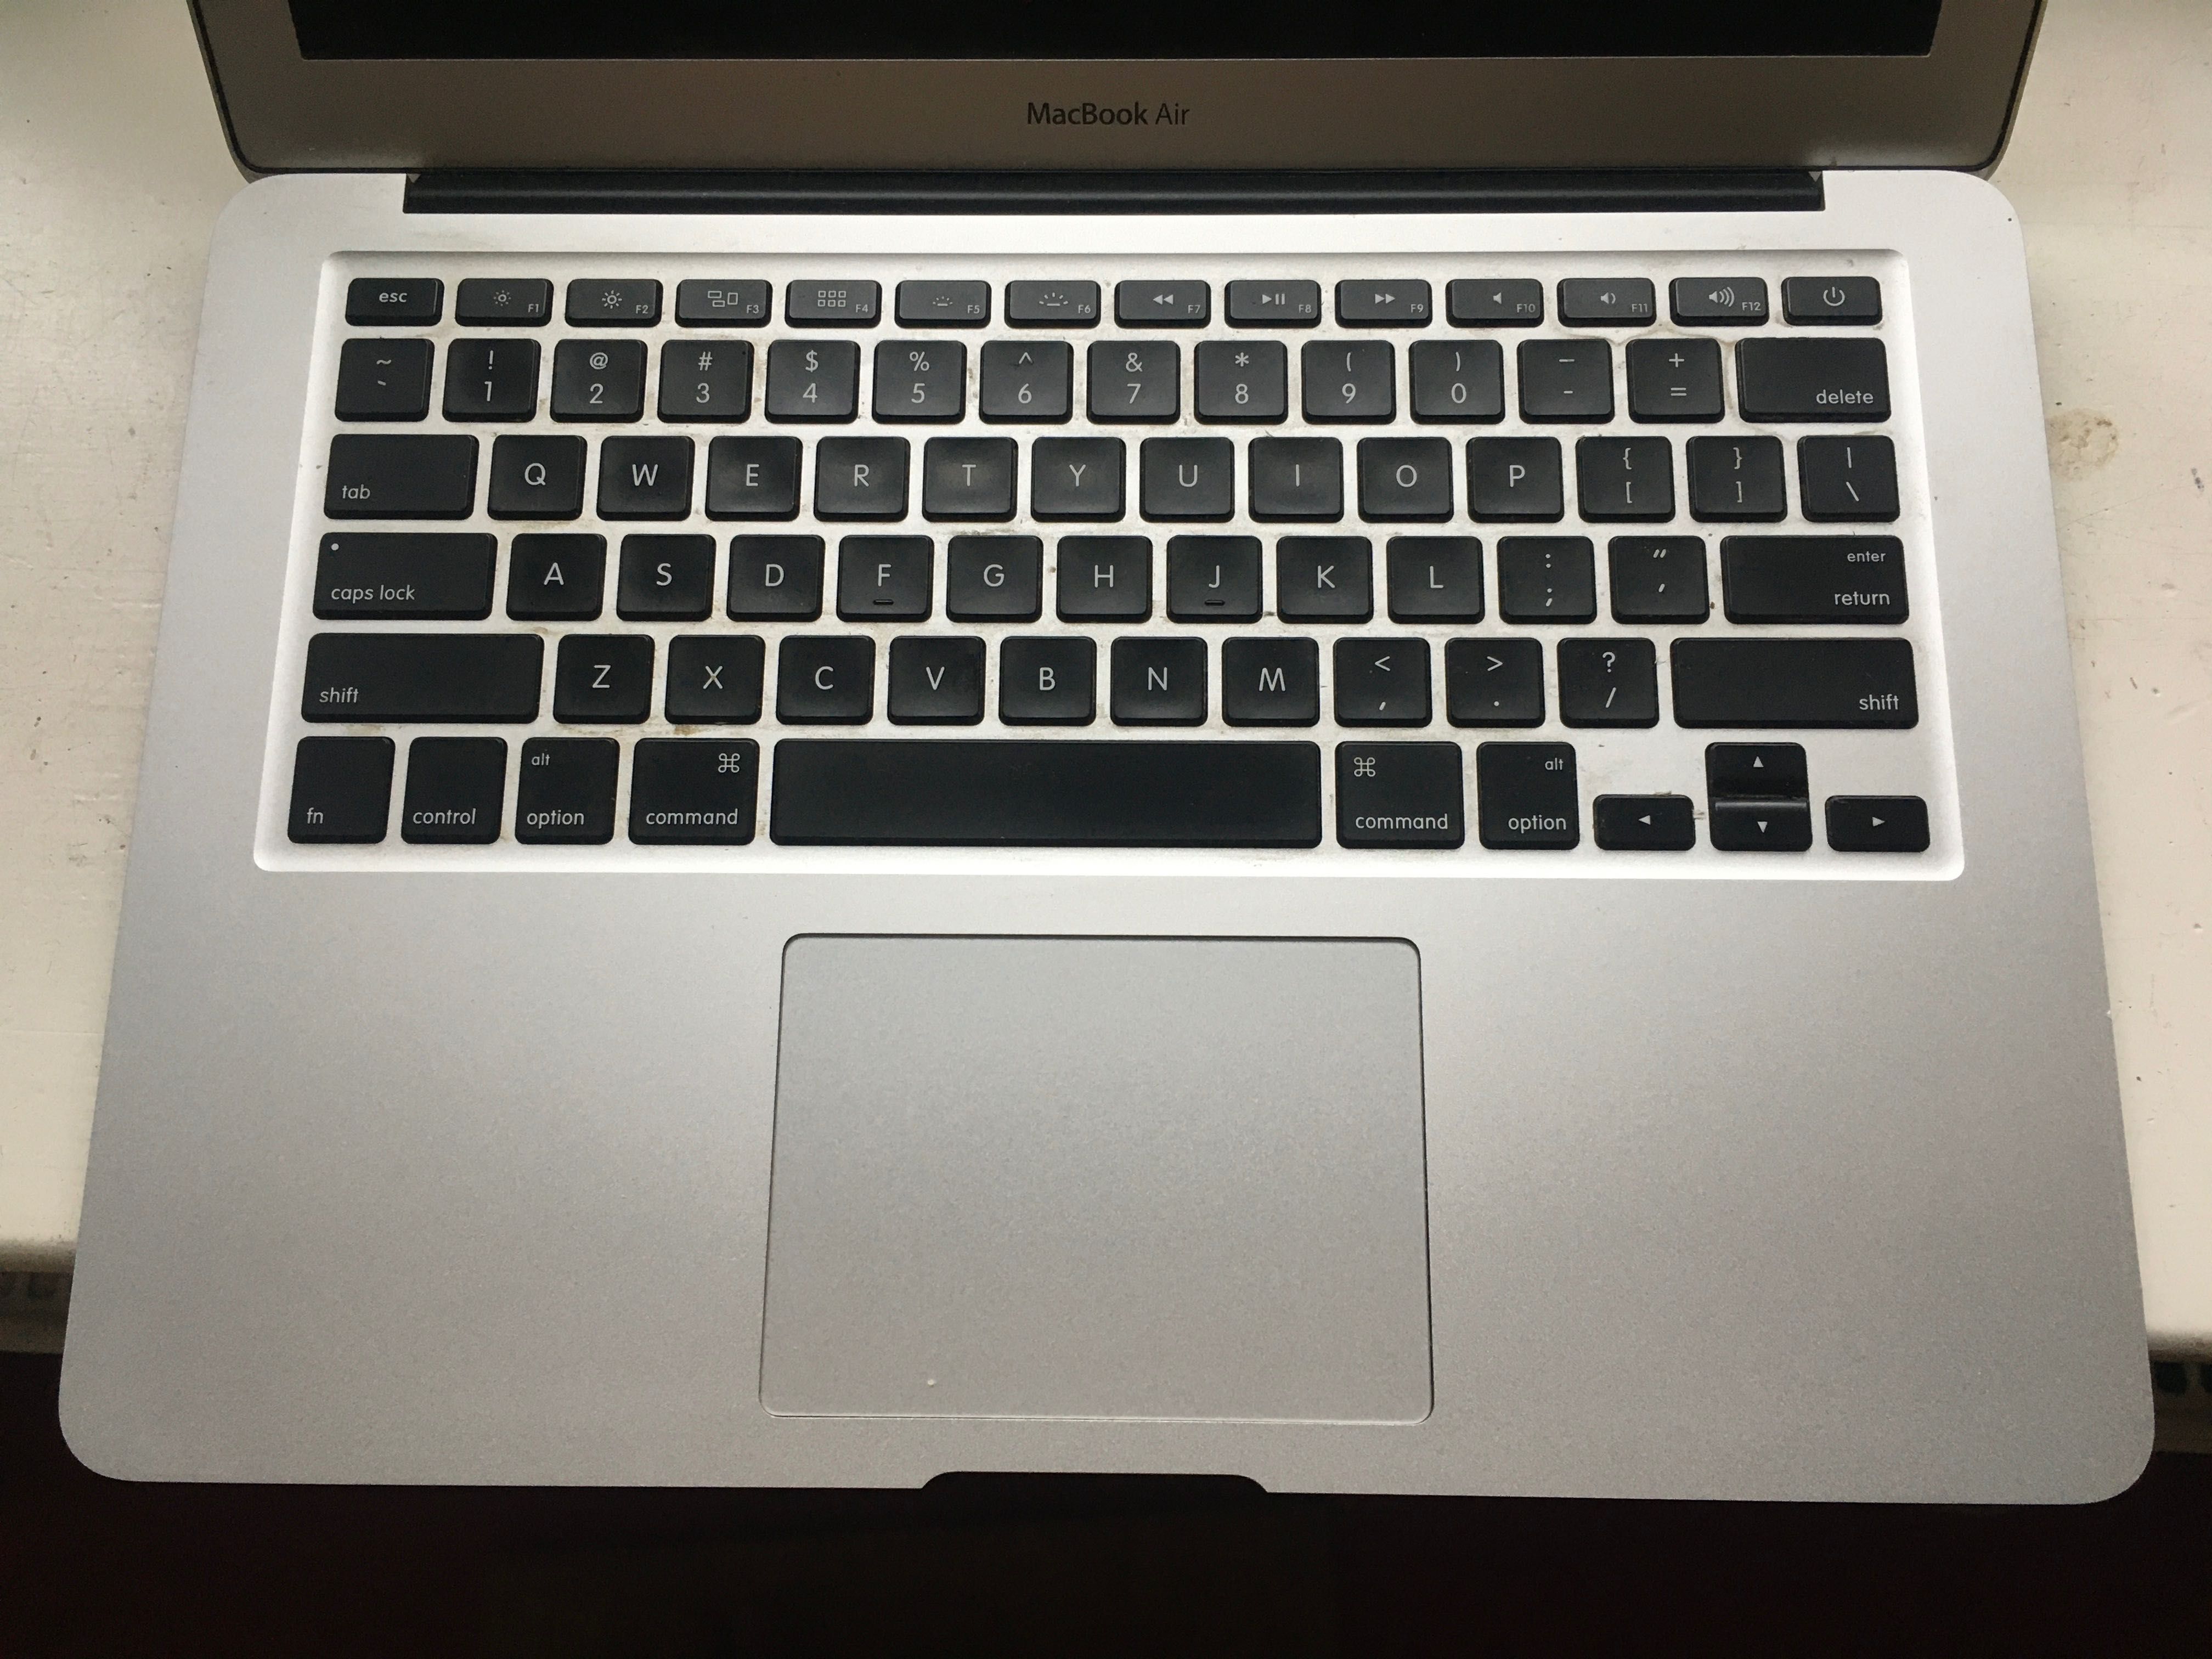 Apple MacBook Air 6,2 | 2013 | i7 1,7gHz| 8GB | 500GB |